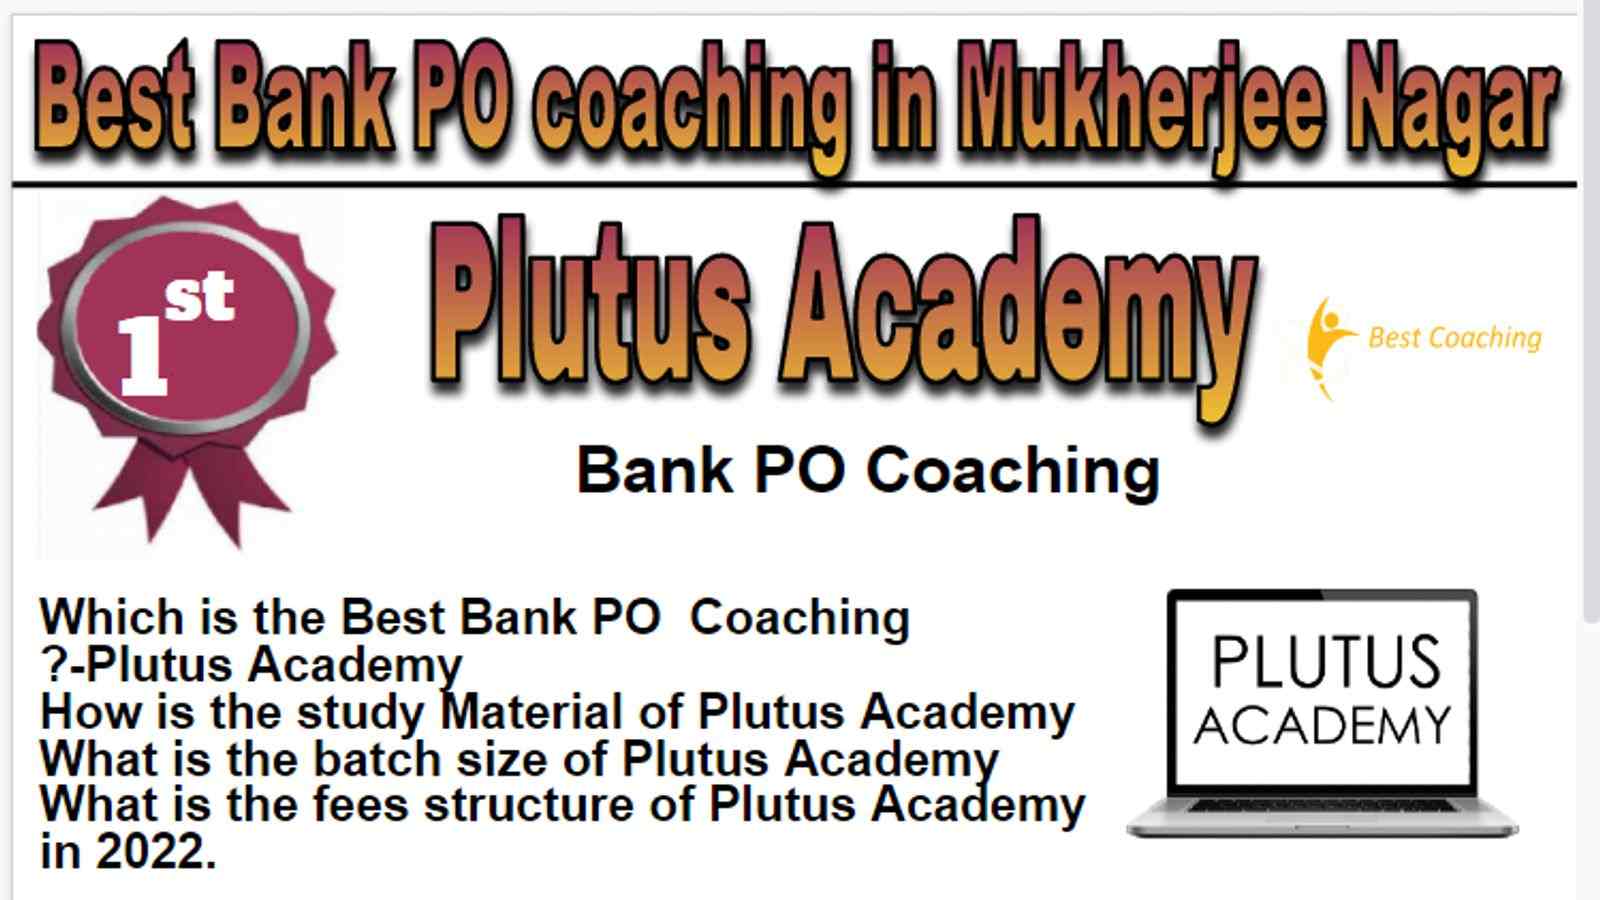 Best Bank PO Coaching in Mukherjee Nagar